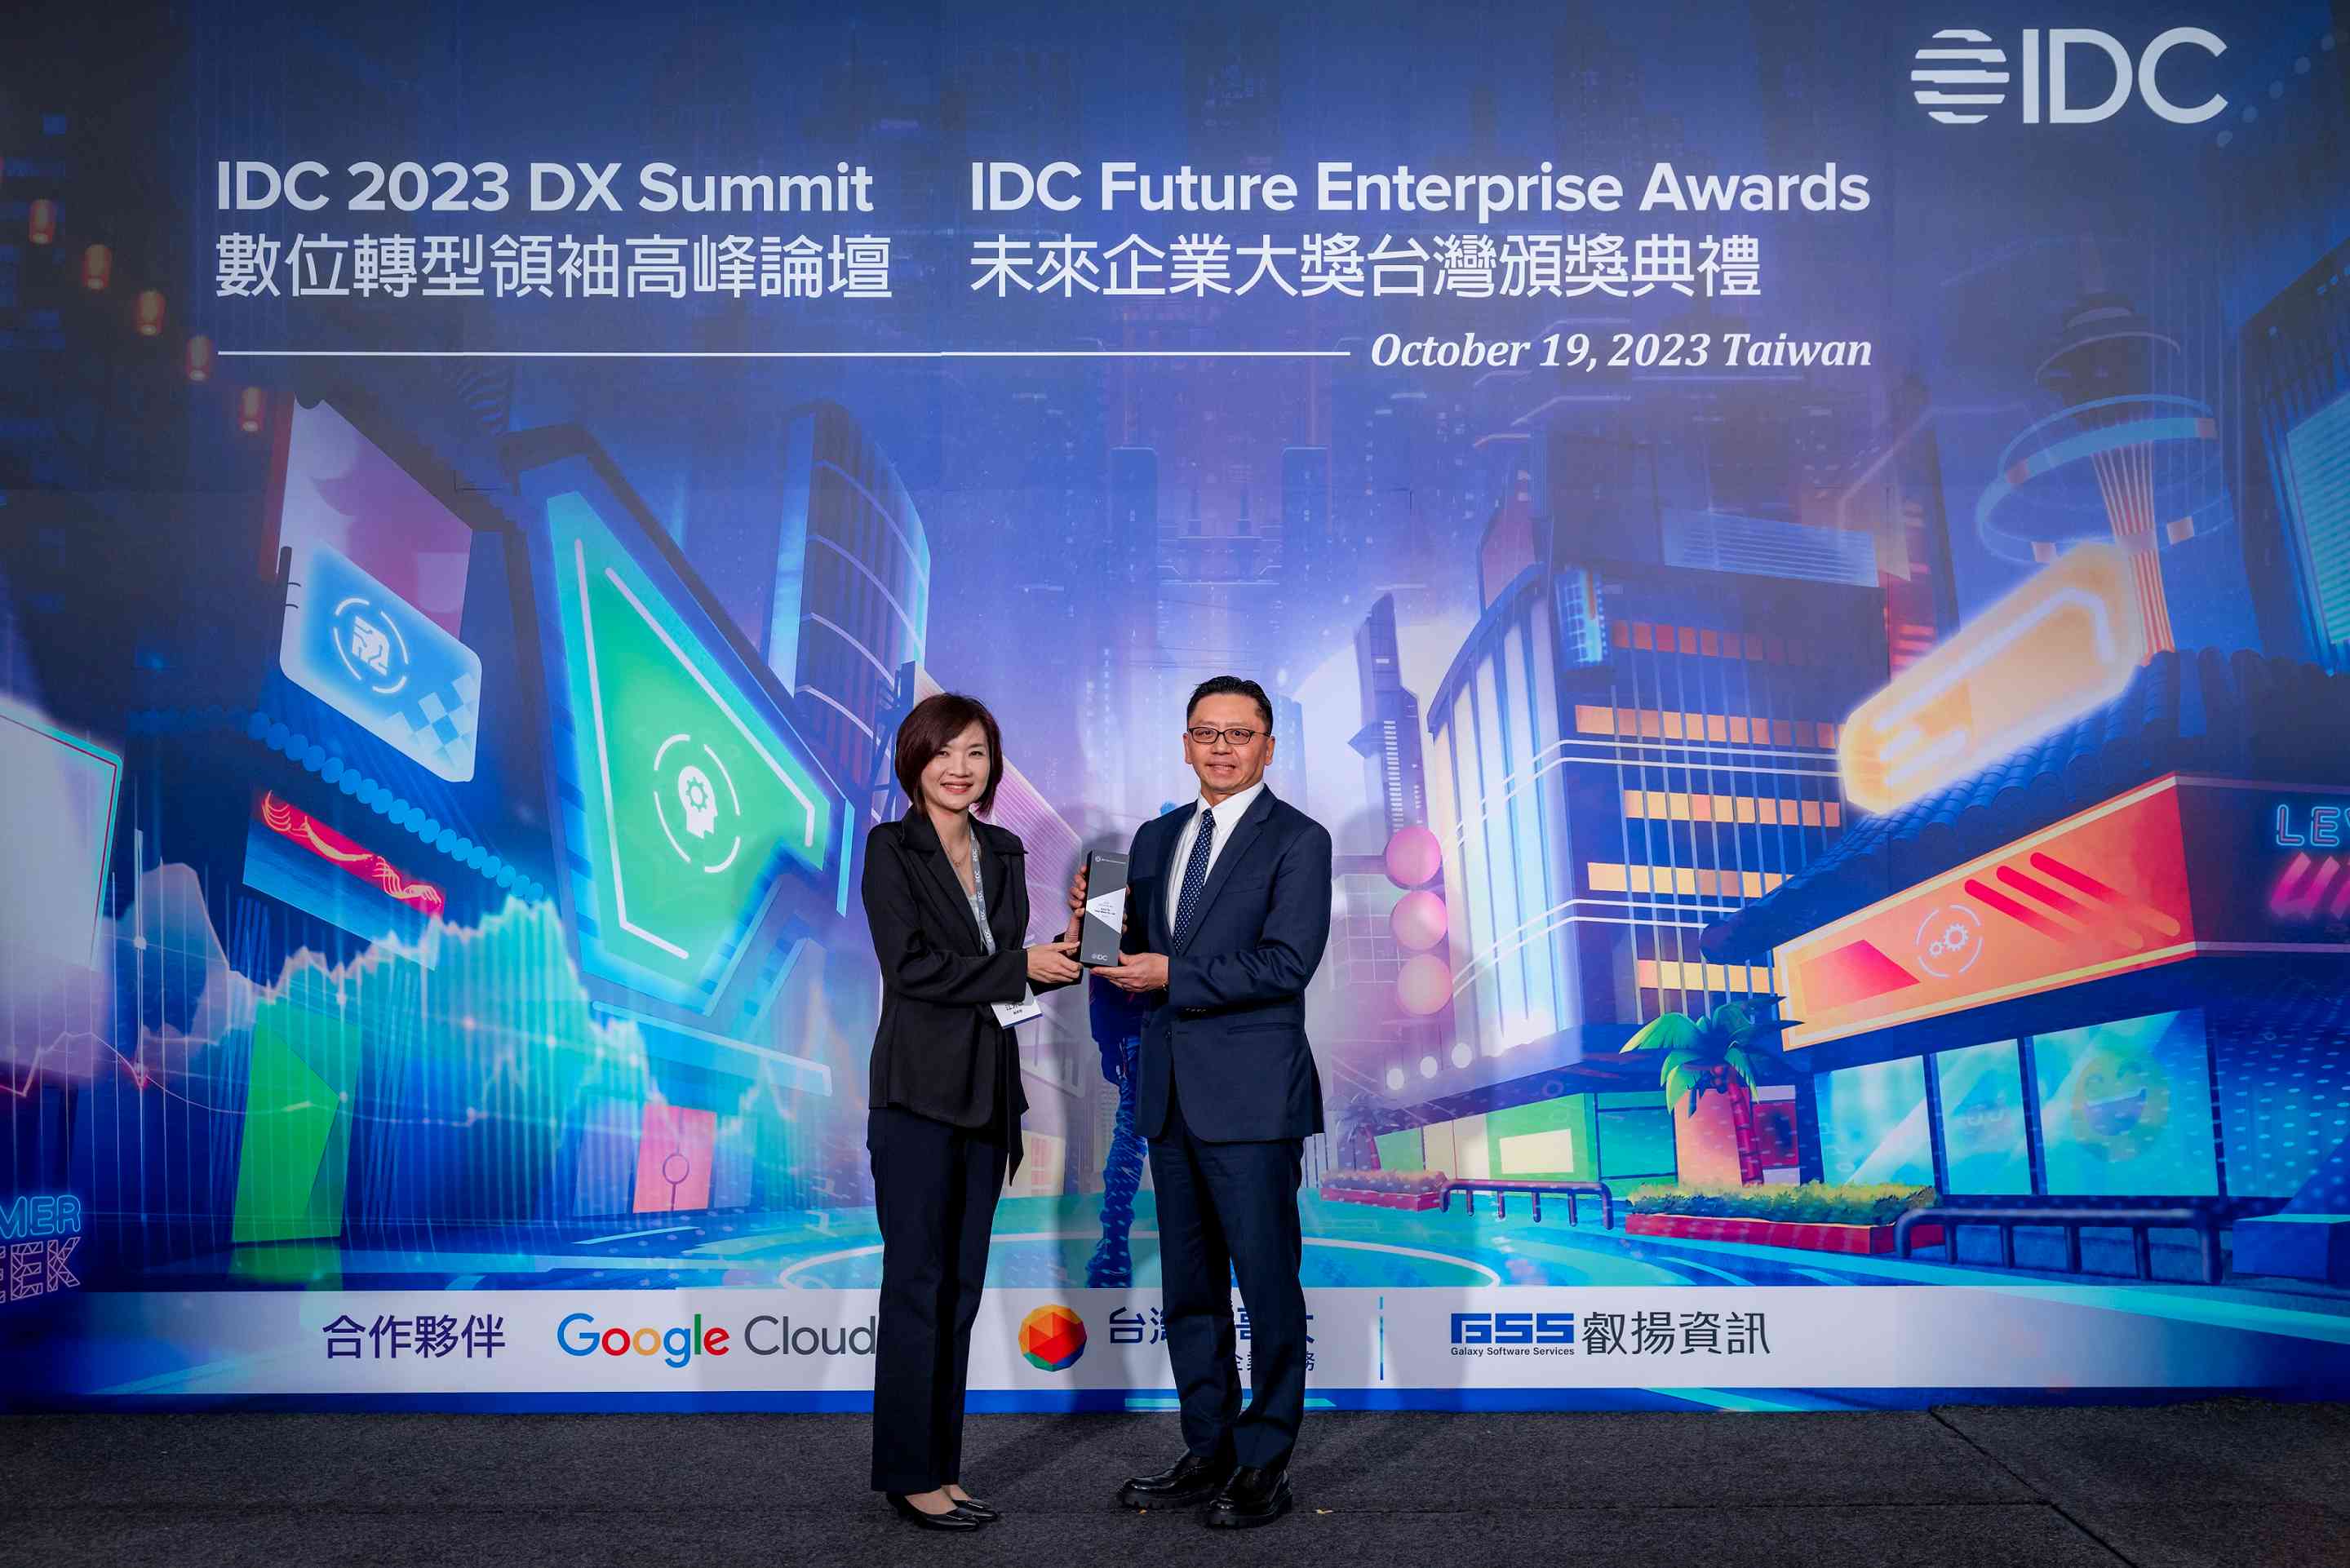 和泰汽車總經理蘇純興榮獲IDC2023年未來企業年度CEO大獎